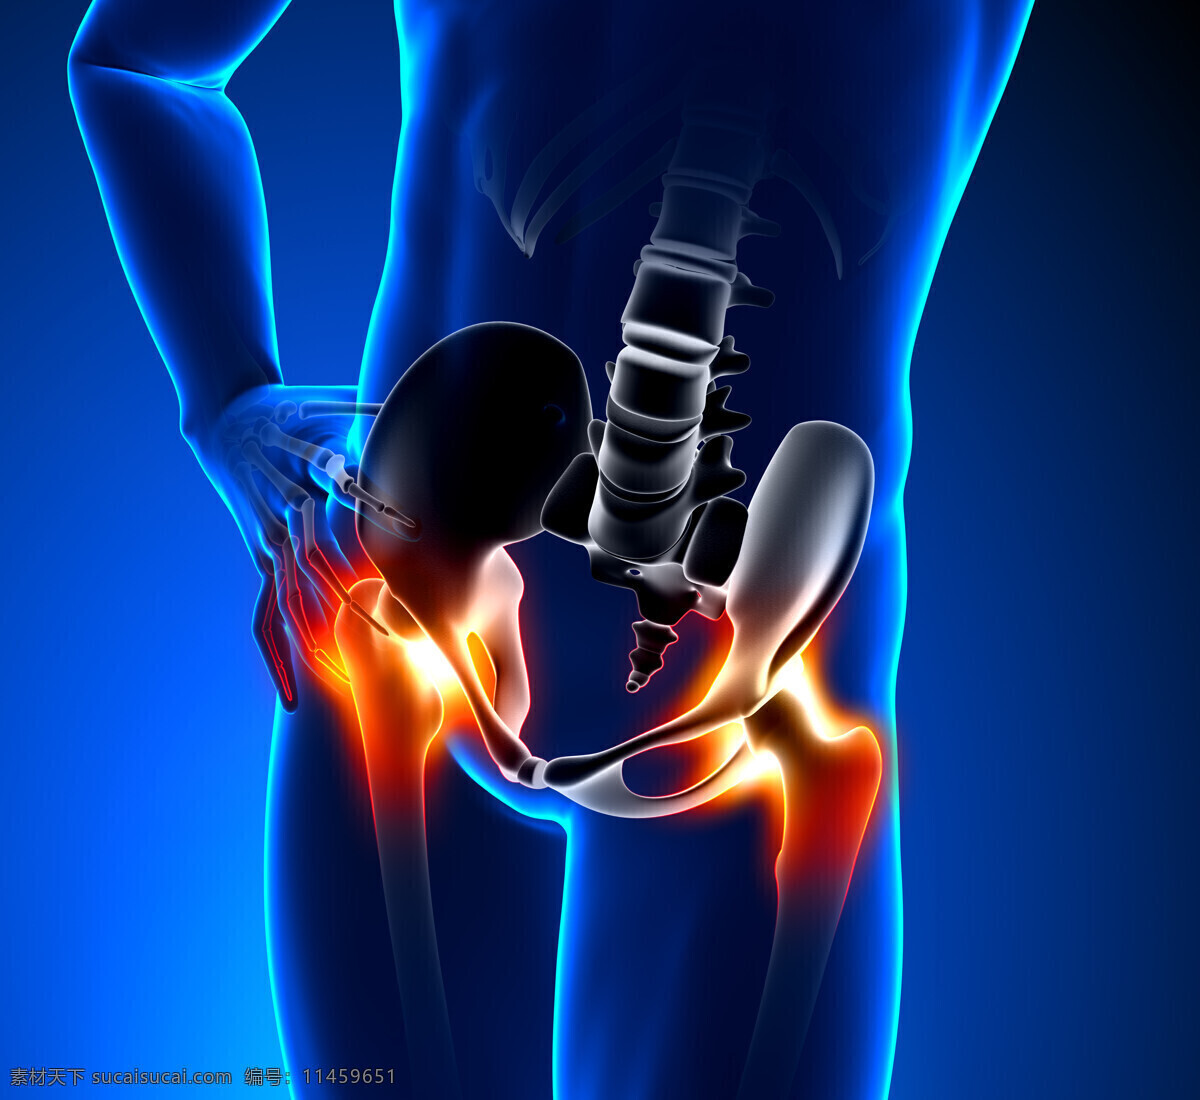 人体 股骨头 疼痛 人体模型 人体结构 人体器官 医学 生物 人体器官图 人物图片